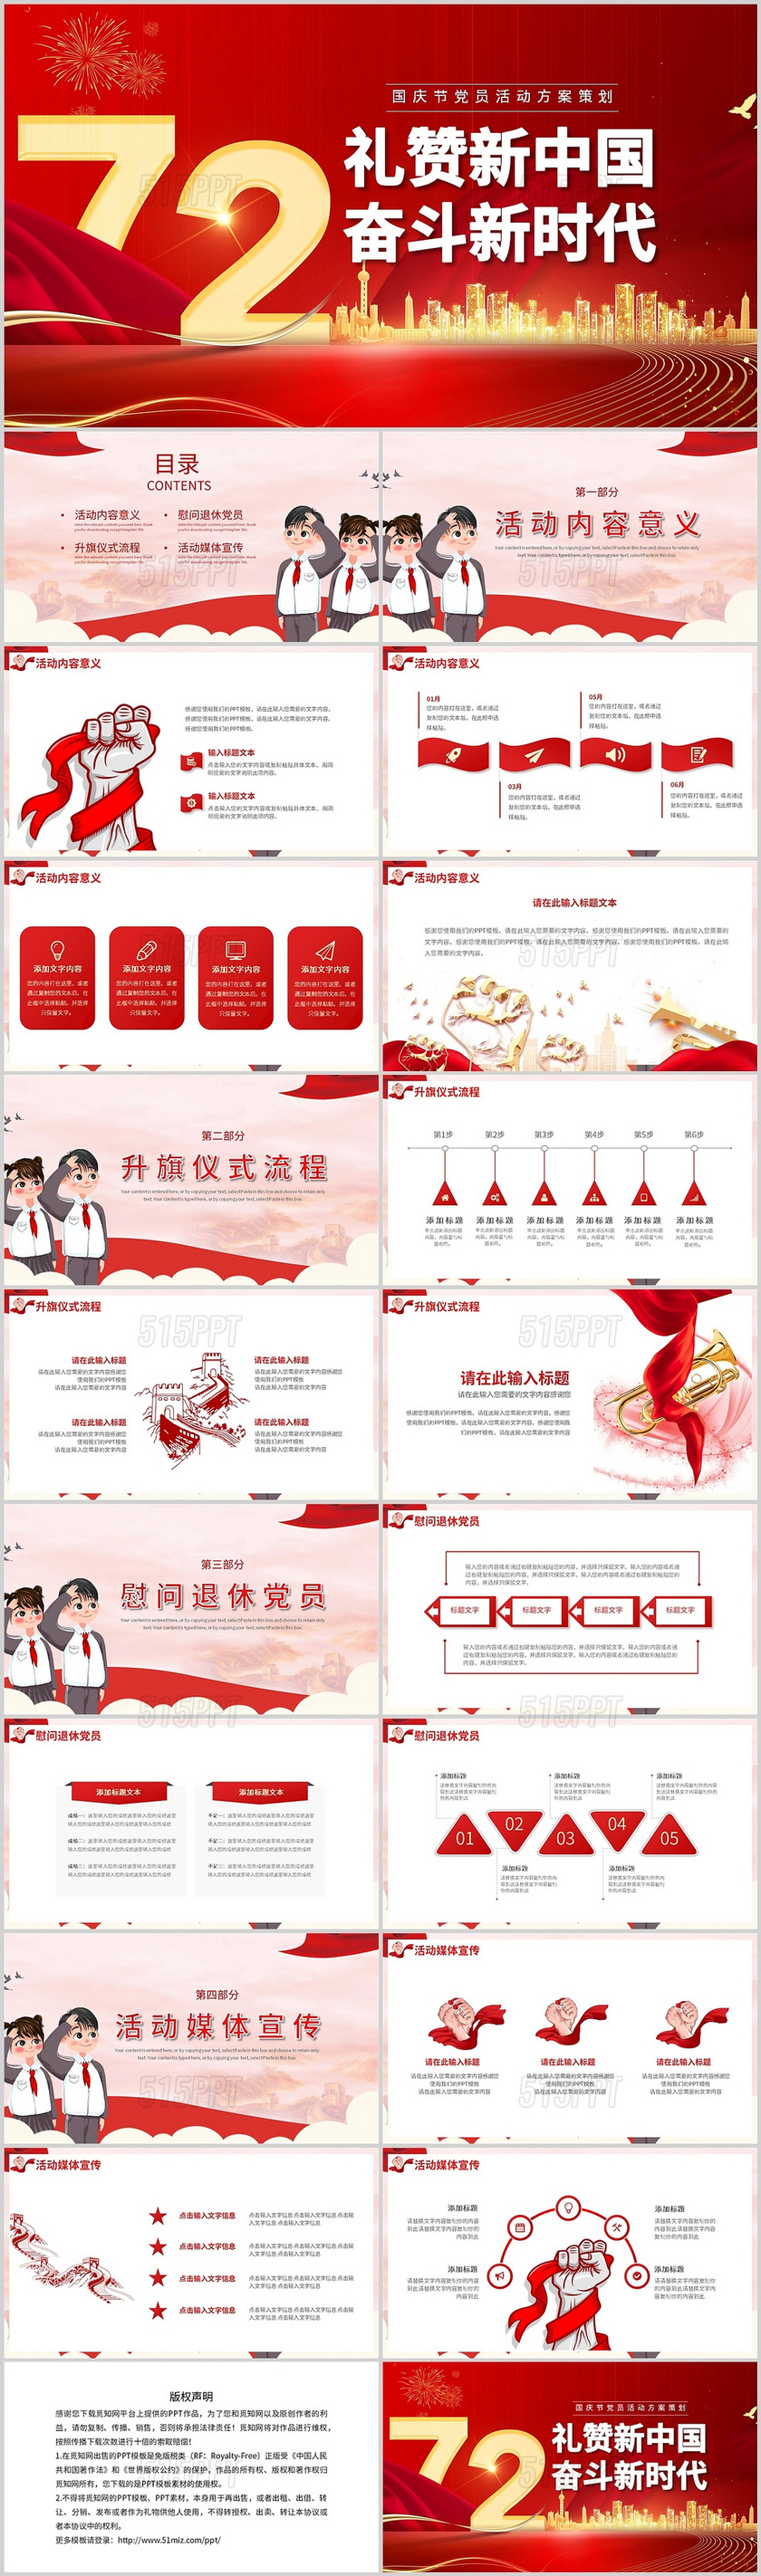 红色礼赞新中国奋斗新时代十一国庆节72周年活动方案策划执行宣传通用PPT模板